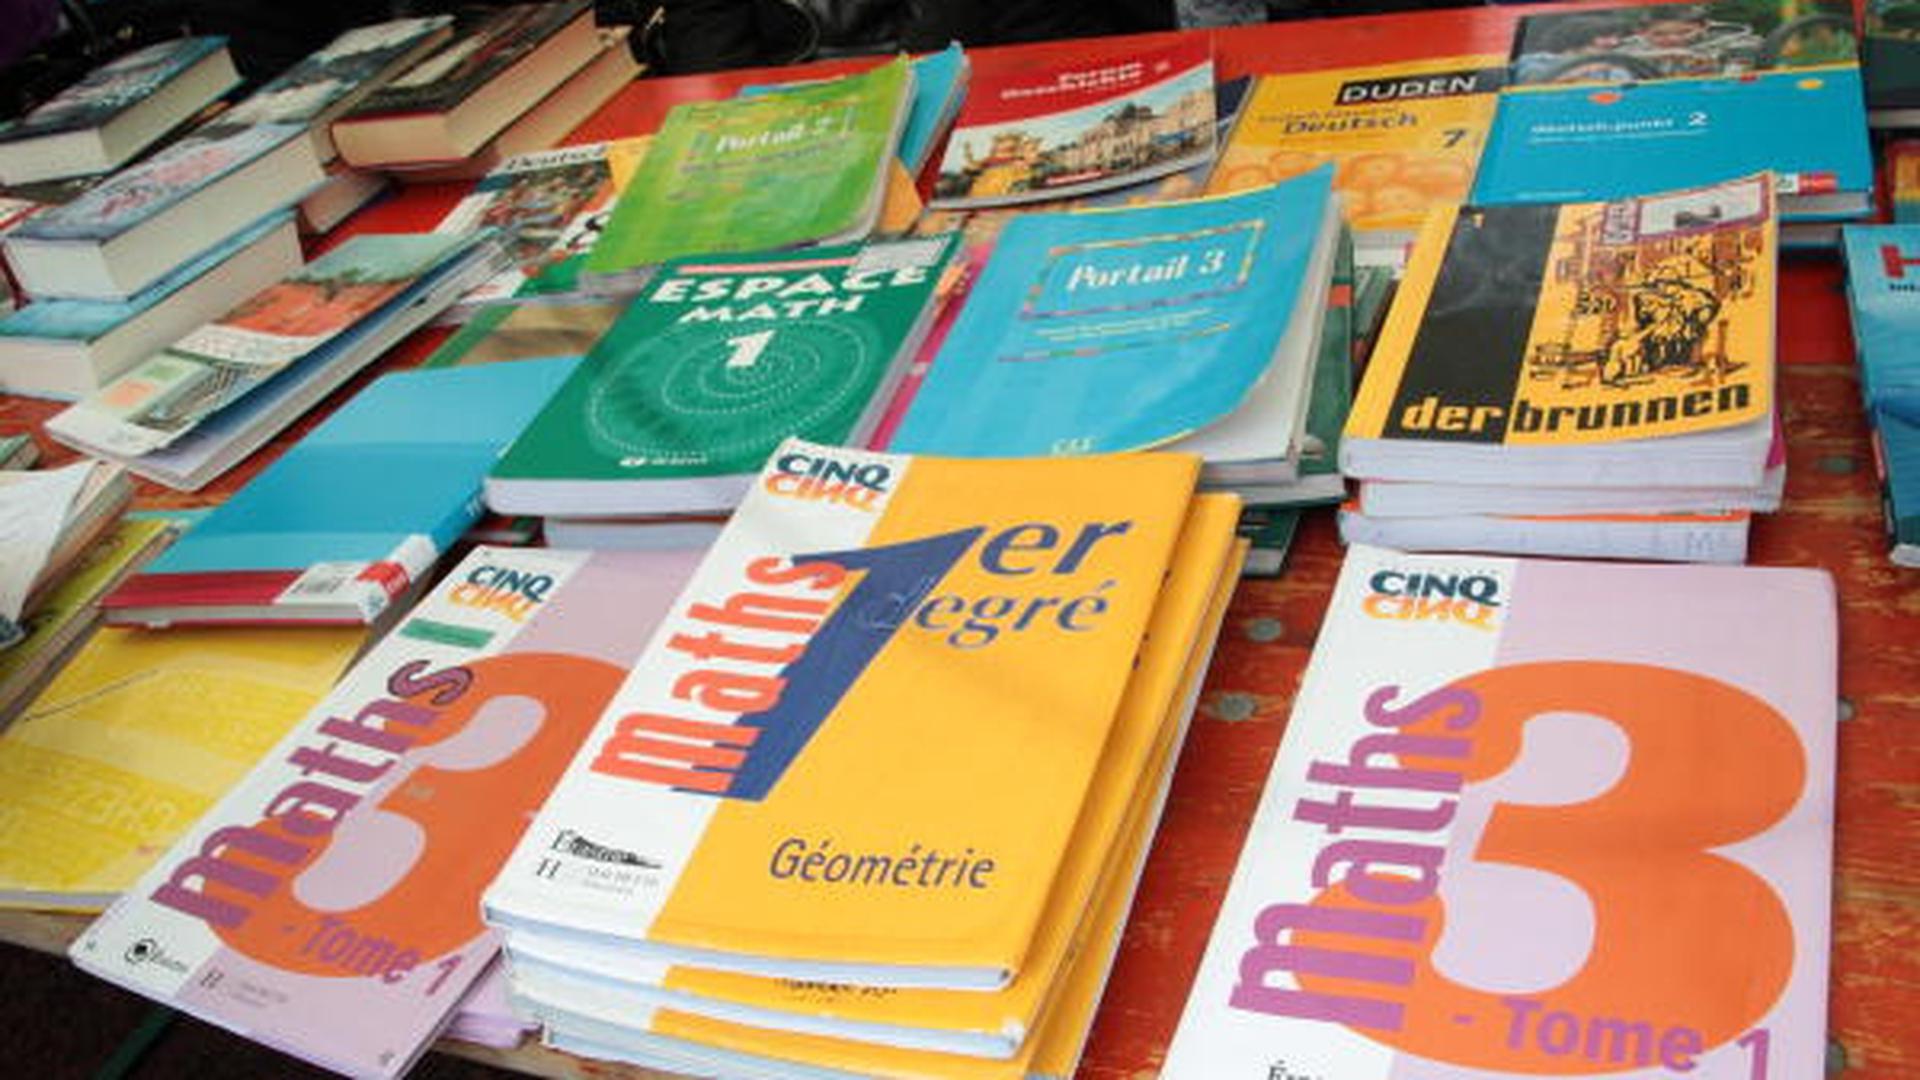 Le ministère de l'Education nationale envisage la gratuité des livres scolaires pour les élèves du secondaire.